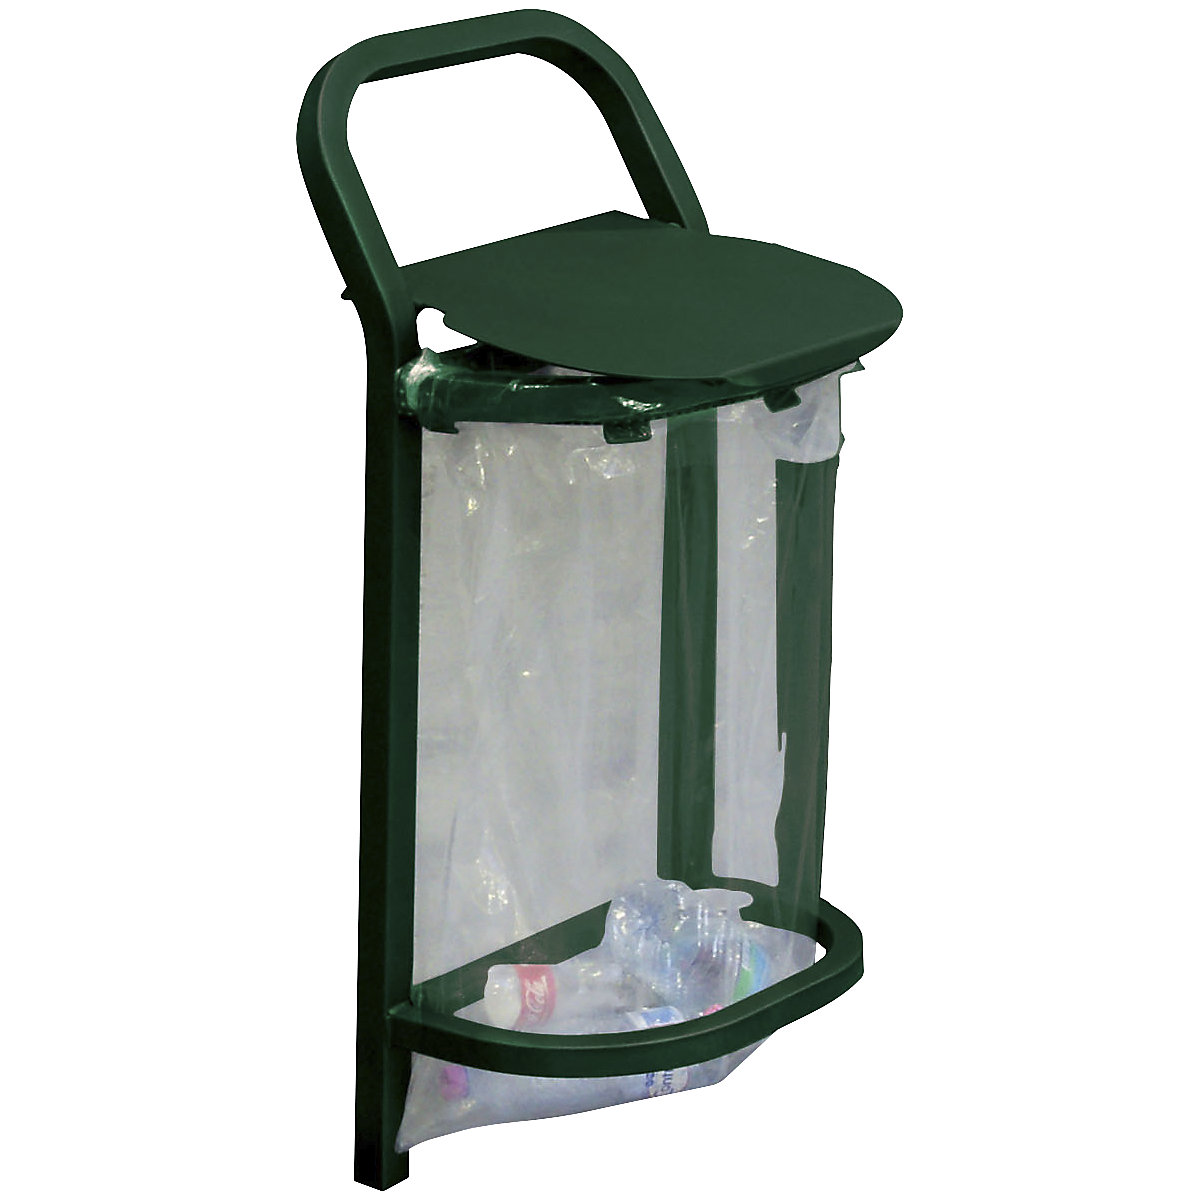 CONVI® ECO outdoor waste basket – PROCITY